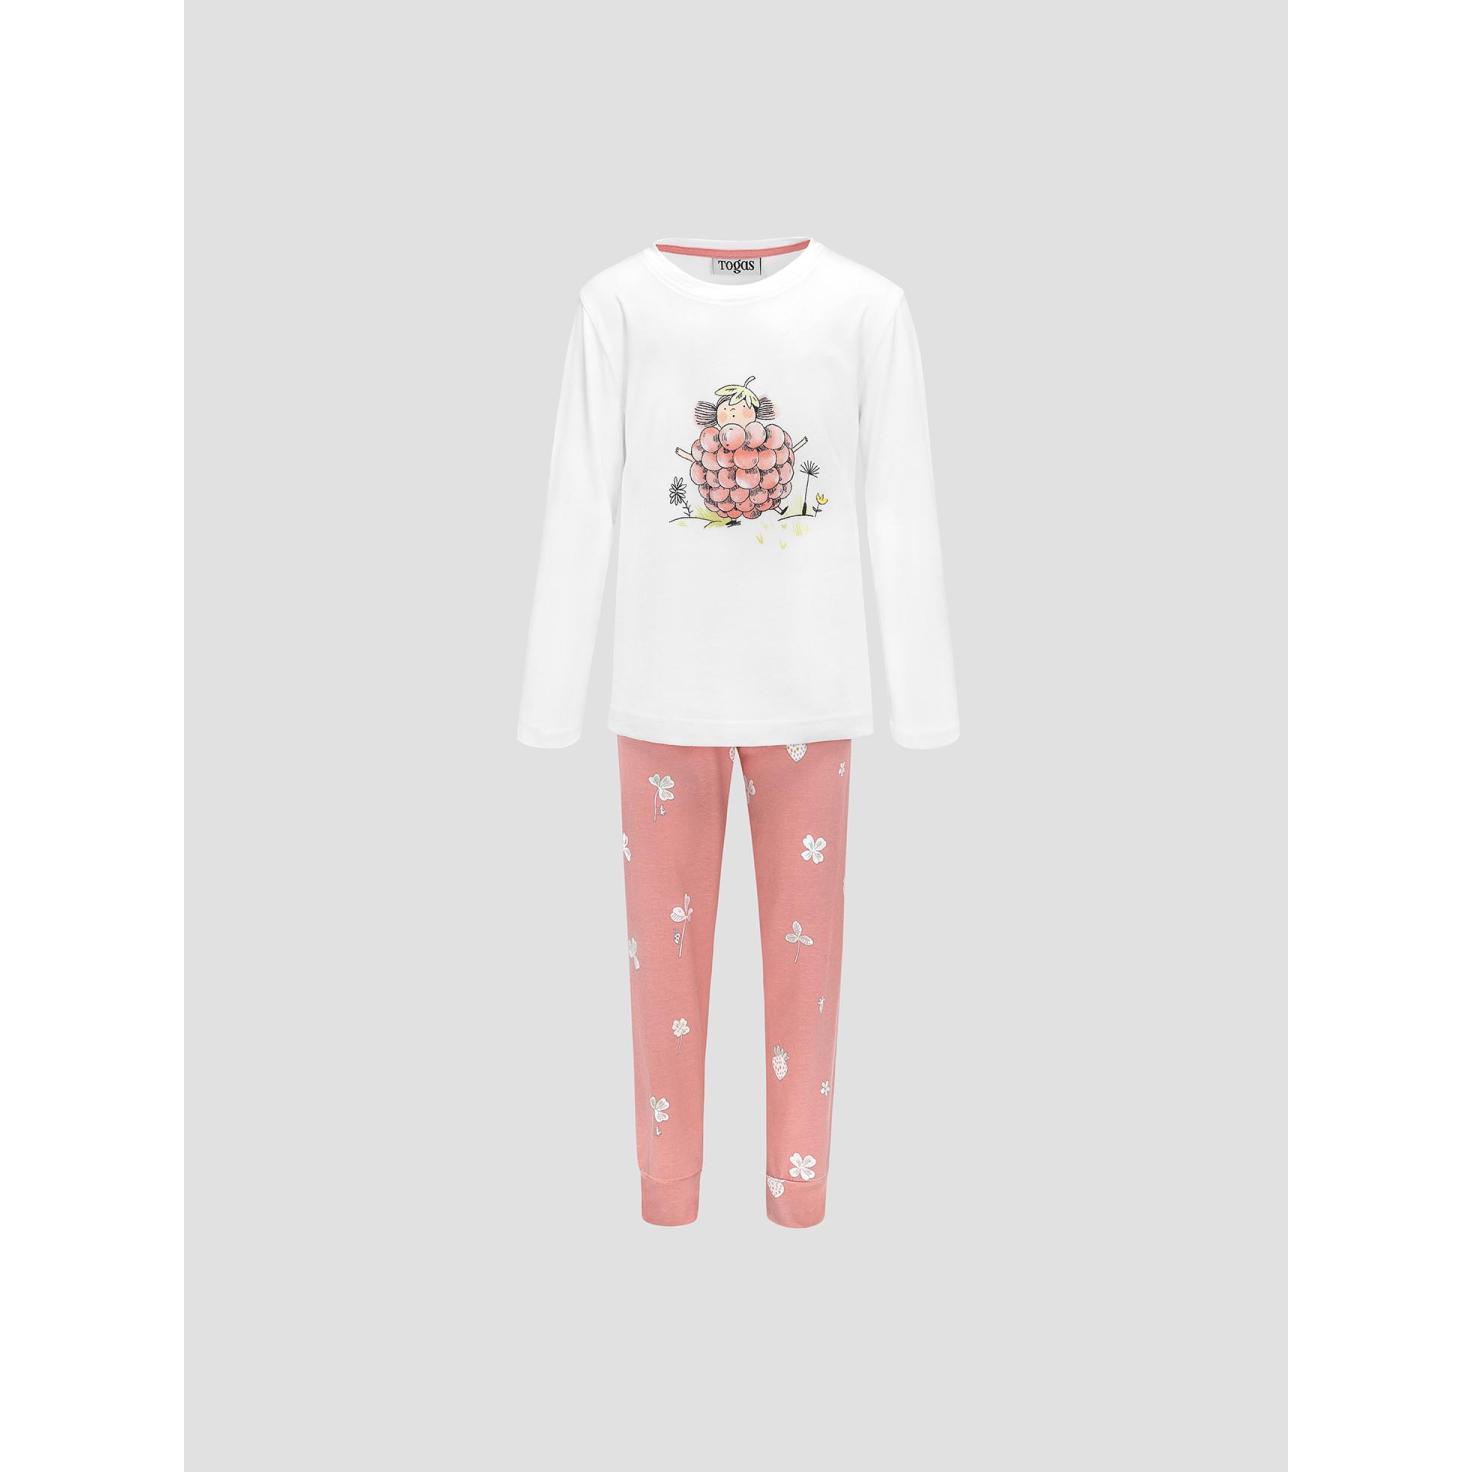 Пижама для девочек Kids by togas Стробби бело-розовый 116-122 см пижама для девочек kids by togas стробби бело розовый 116 122 см